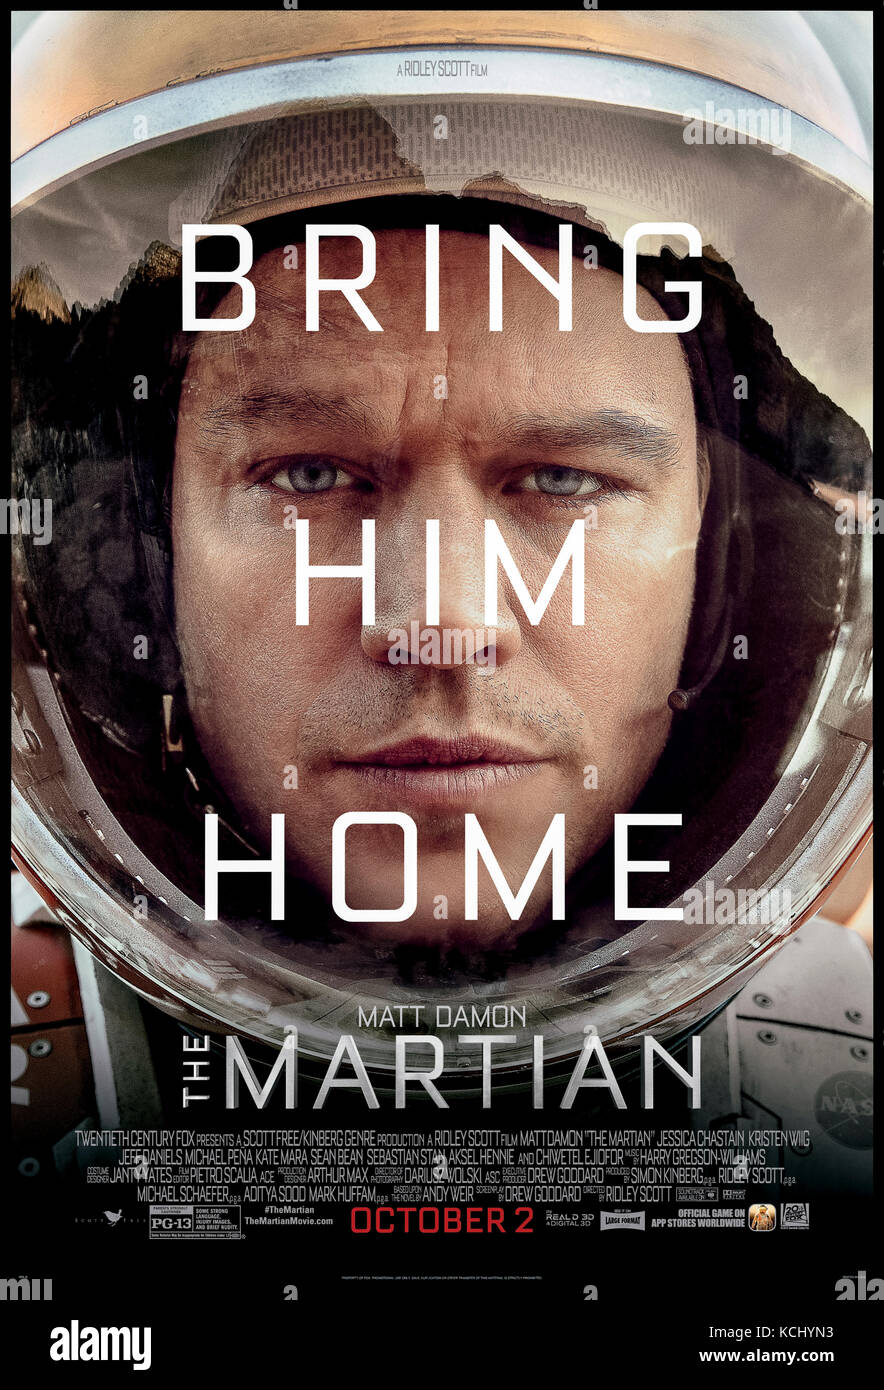 Auf dem Mars (2015) von Ridley Scott Regie und Hauptdarsteller Matt Damon, Jessica Chastain und Kristen Wiig. Ein Astronaut auf dem Mars gestrandet und vermutlich tot muss überleben und Signal Erde mit begrenzten Ressourcen. Stockfoto